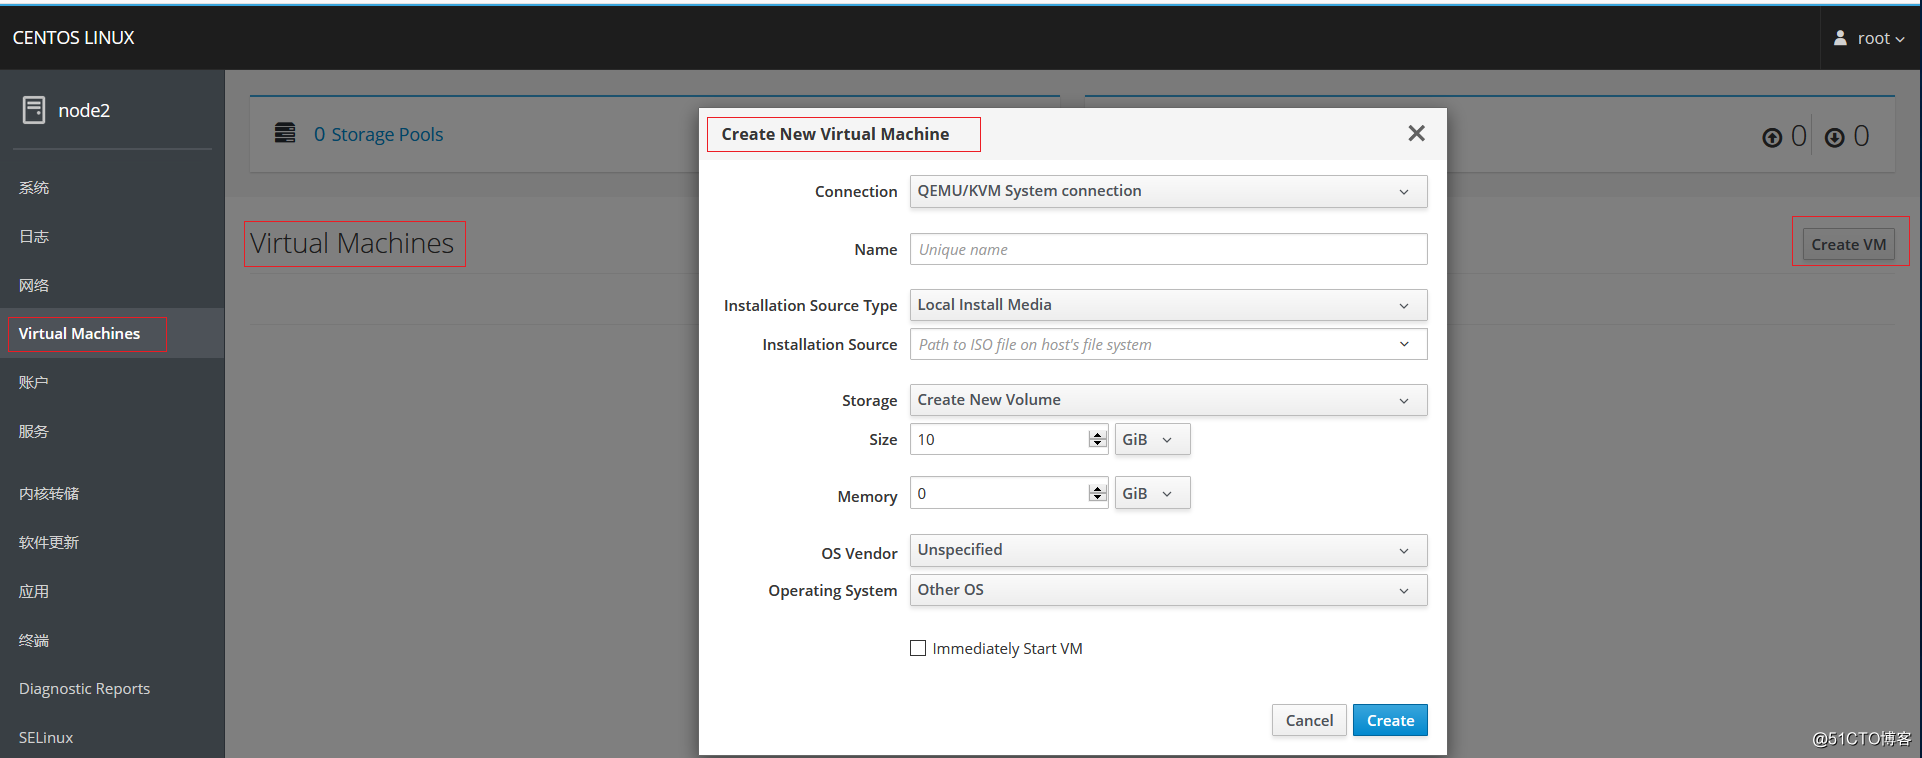 CentOS 8.1 consola Web Nueva manejo de la cabina y la máquina virtual KVM